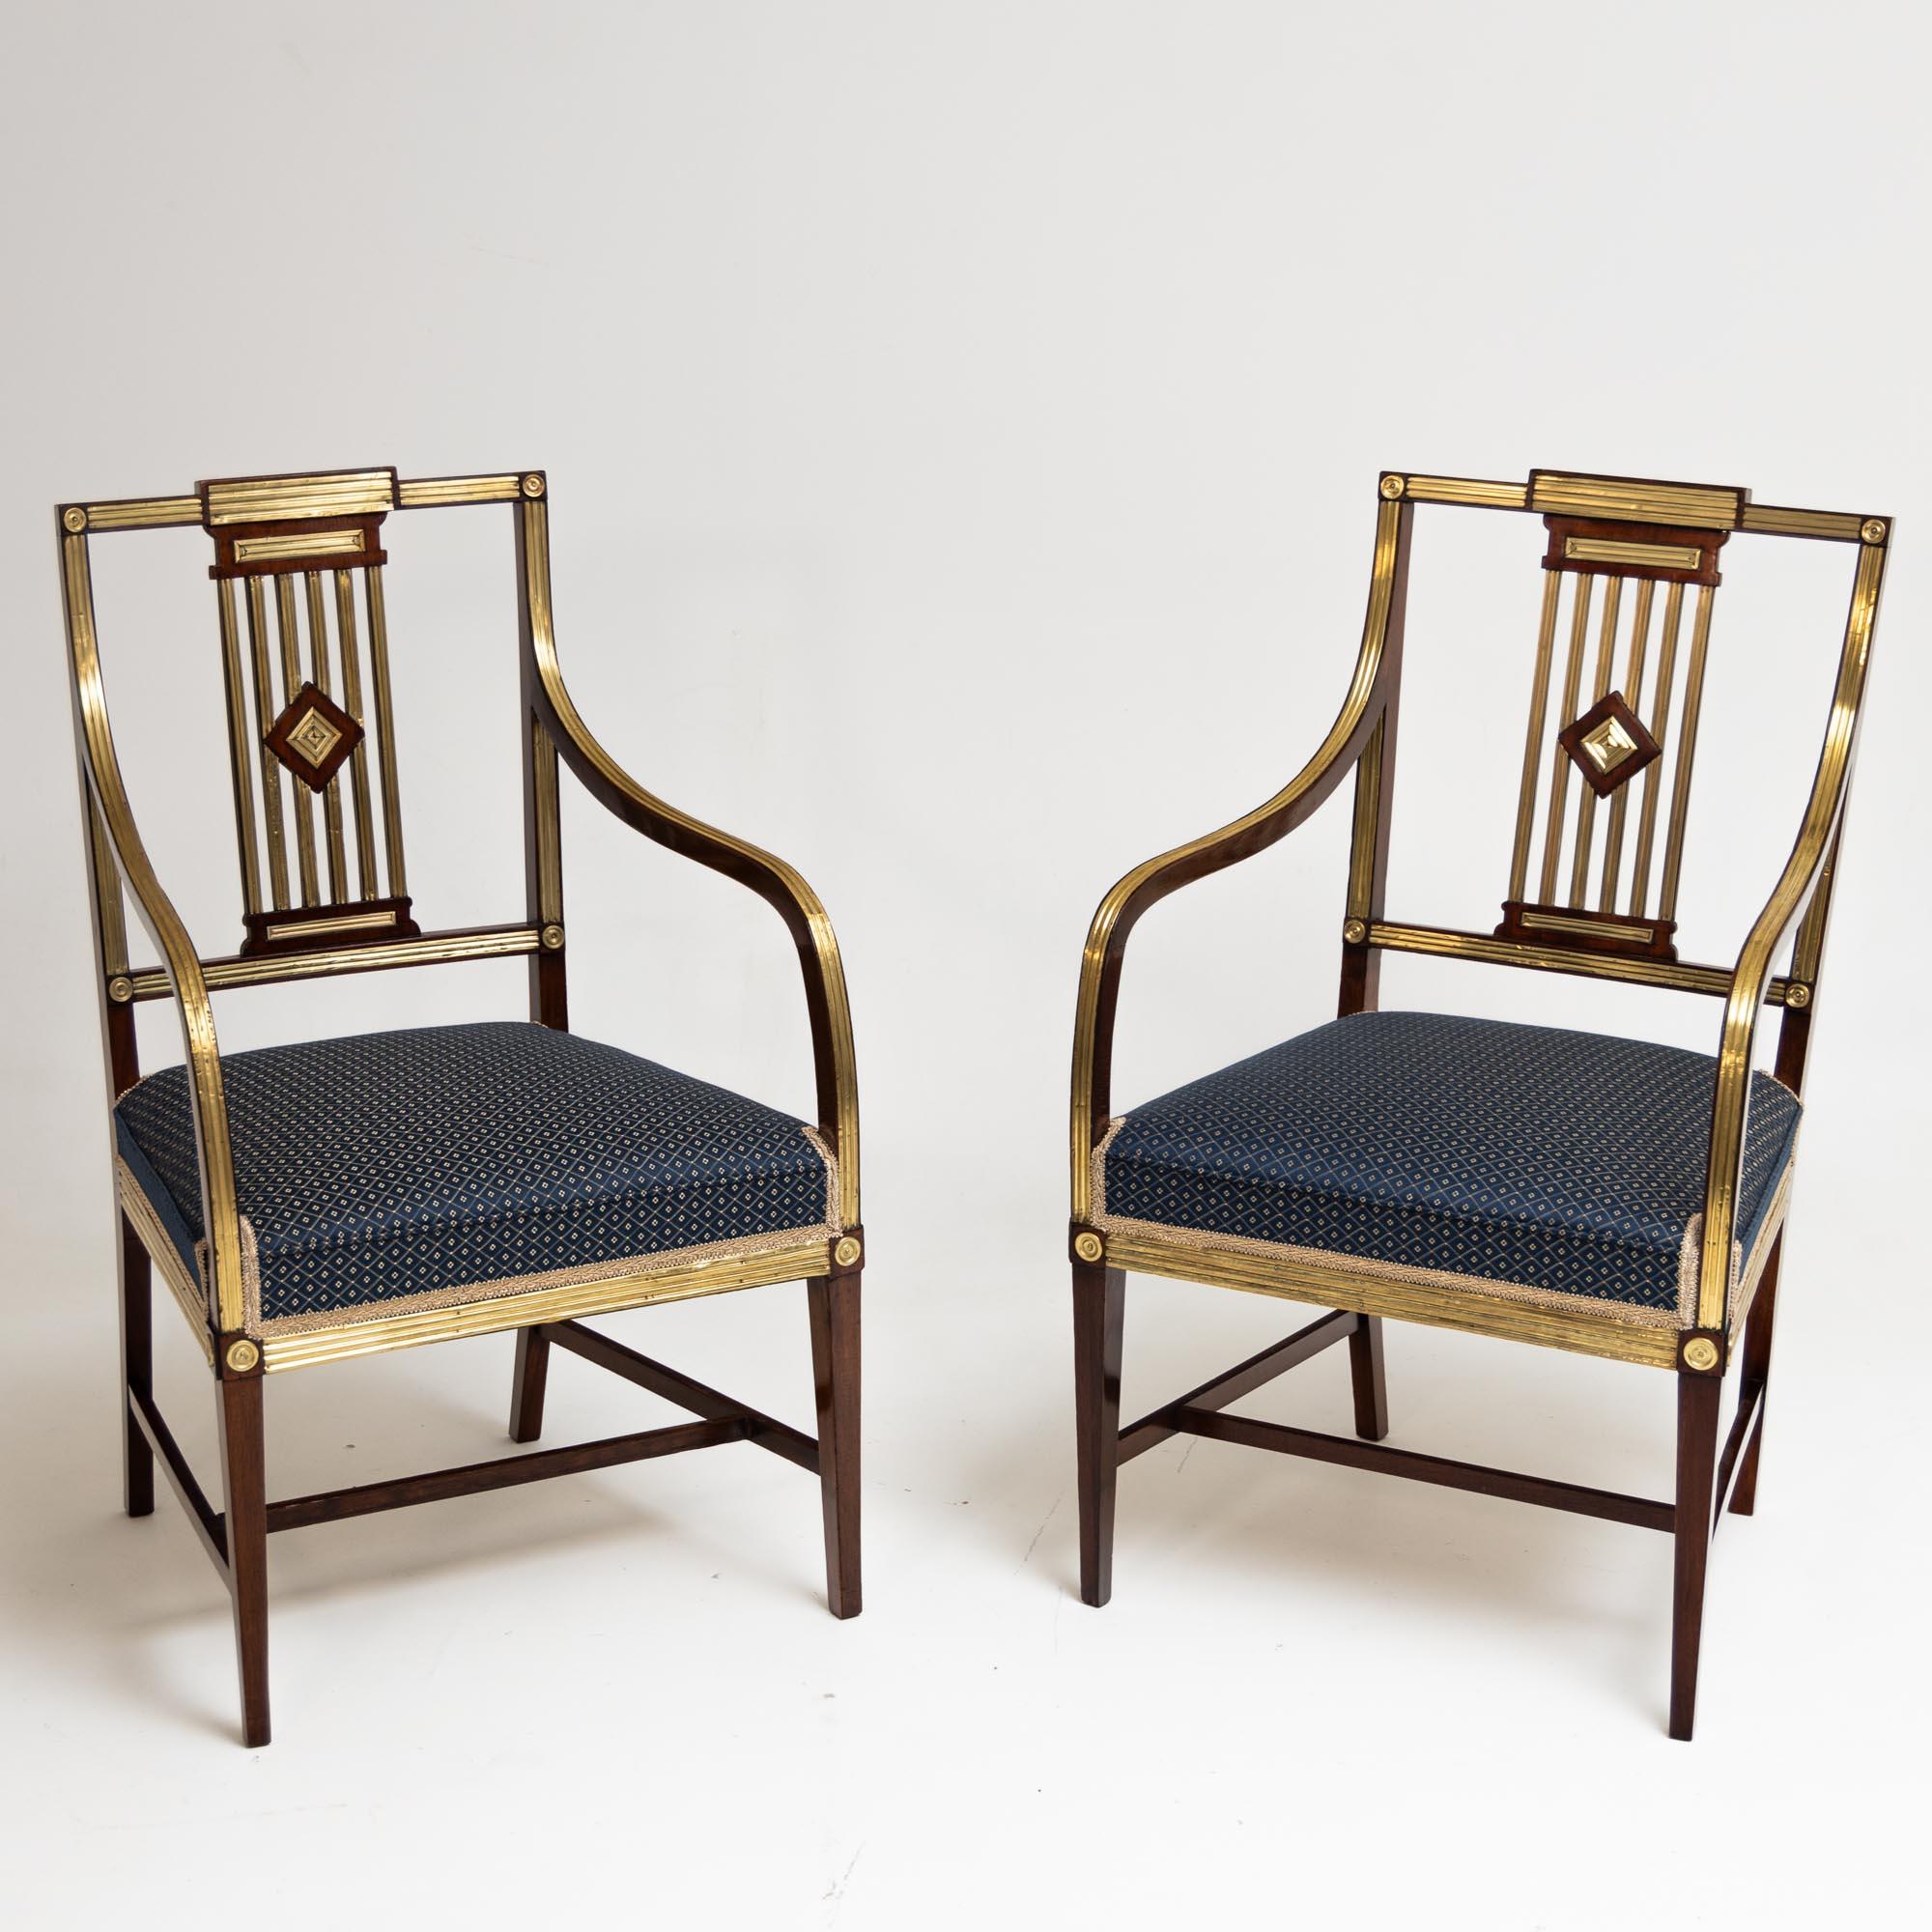 Deux fauteuils classiques en acajou avec décorations en laiton et dossiers ajourés. Les chaises reposent sur des pieds carrés pointus avec des renforts en forme de H, qui se fondent dans des accoudoirs élégamment courbés et surélevés, avec une